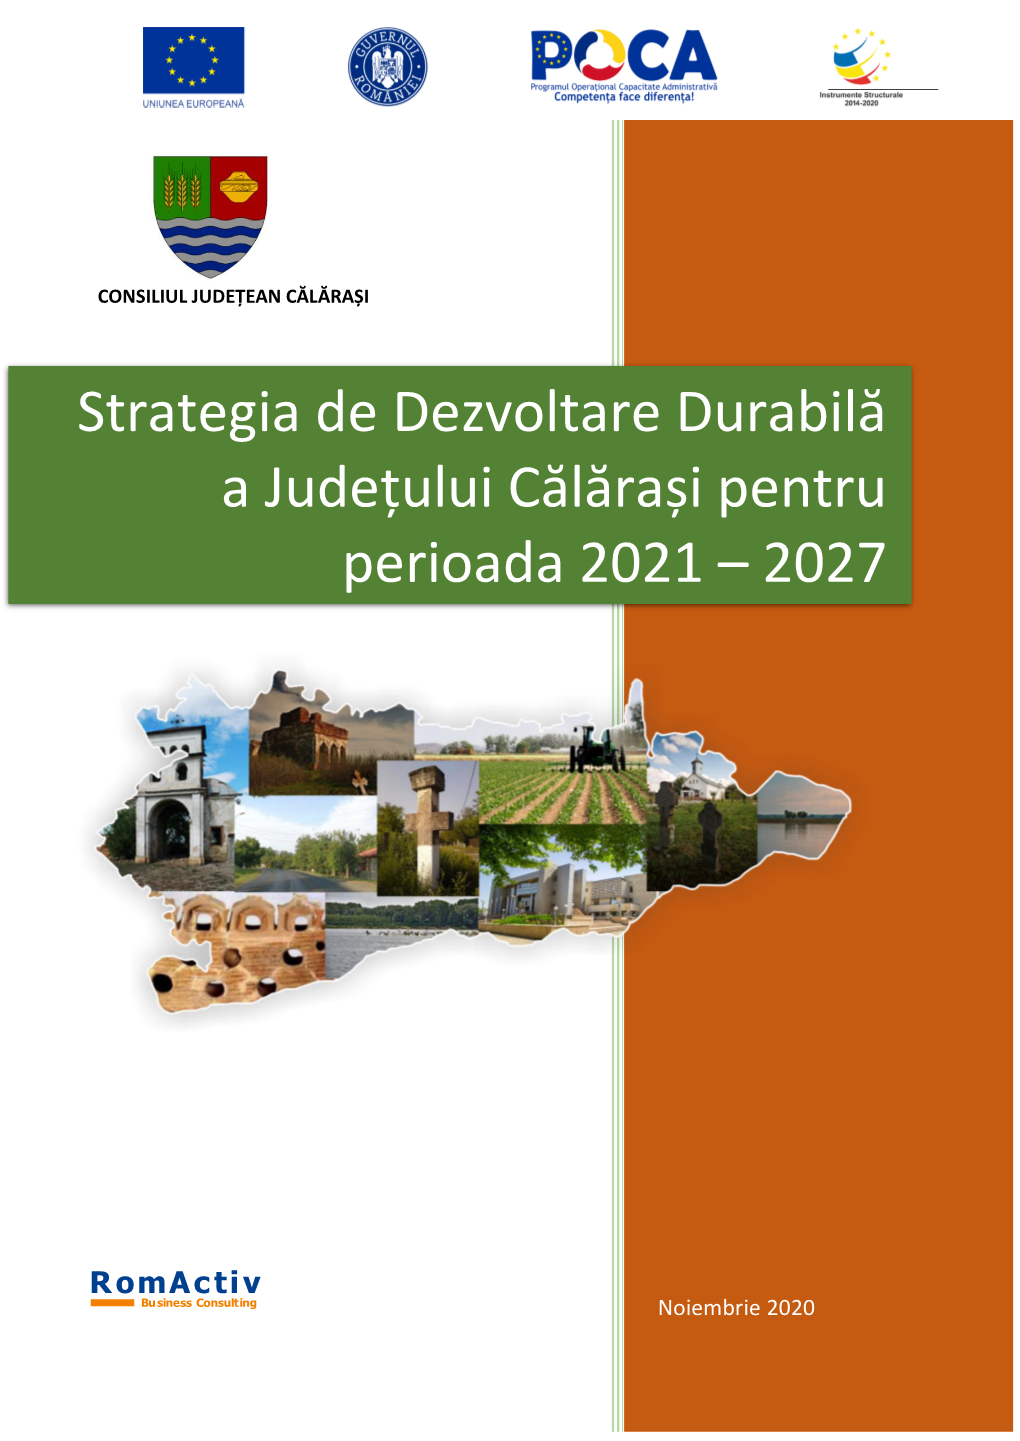 Strategia De Dezvoltare Durabilă a Județului Călărași Pentru Perioada 2021 – 2027